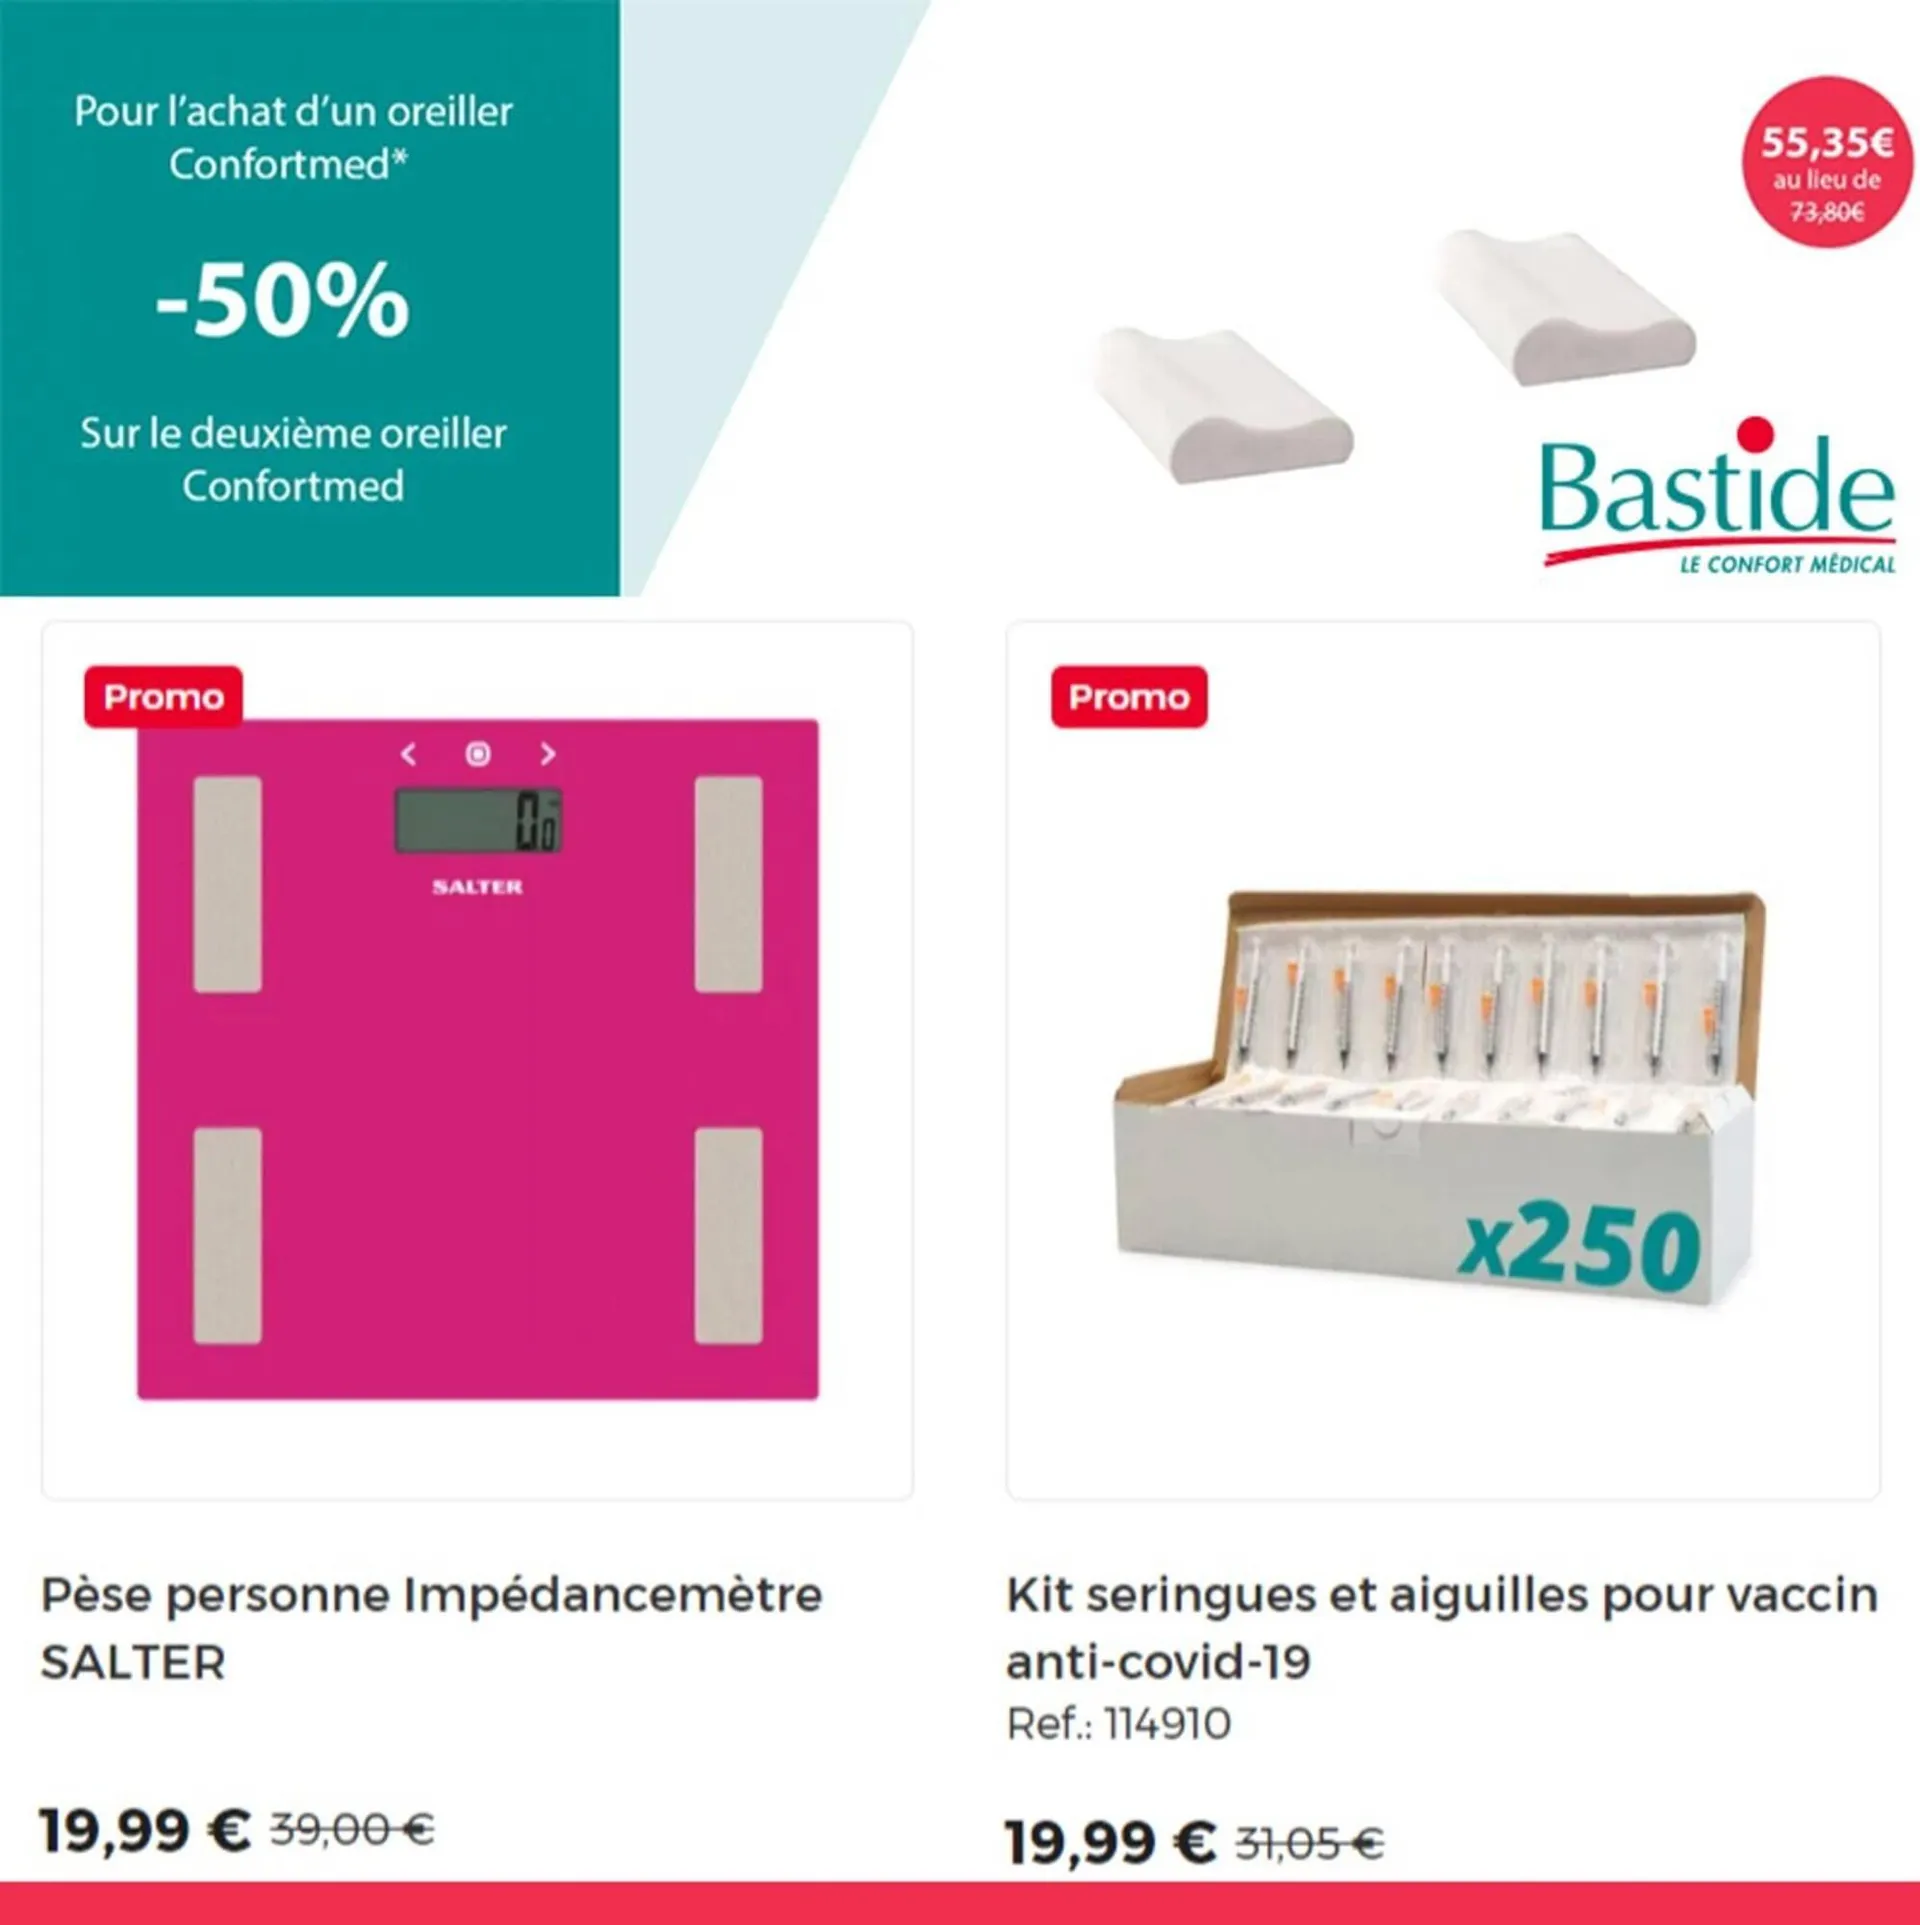 Catalogue Bastide - 1